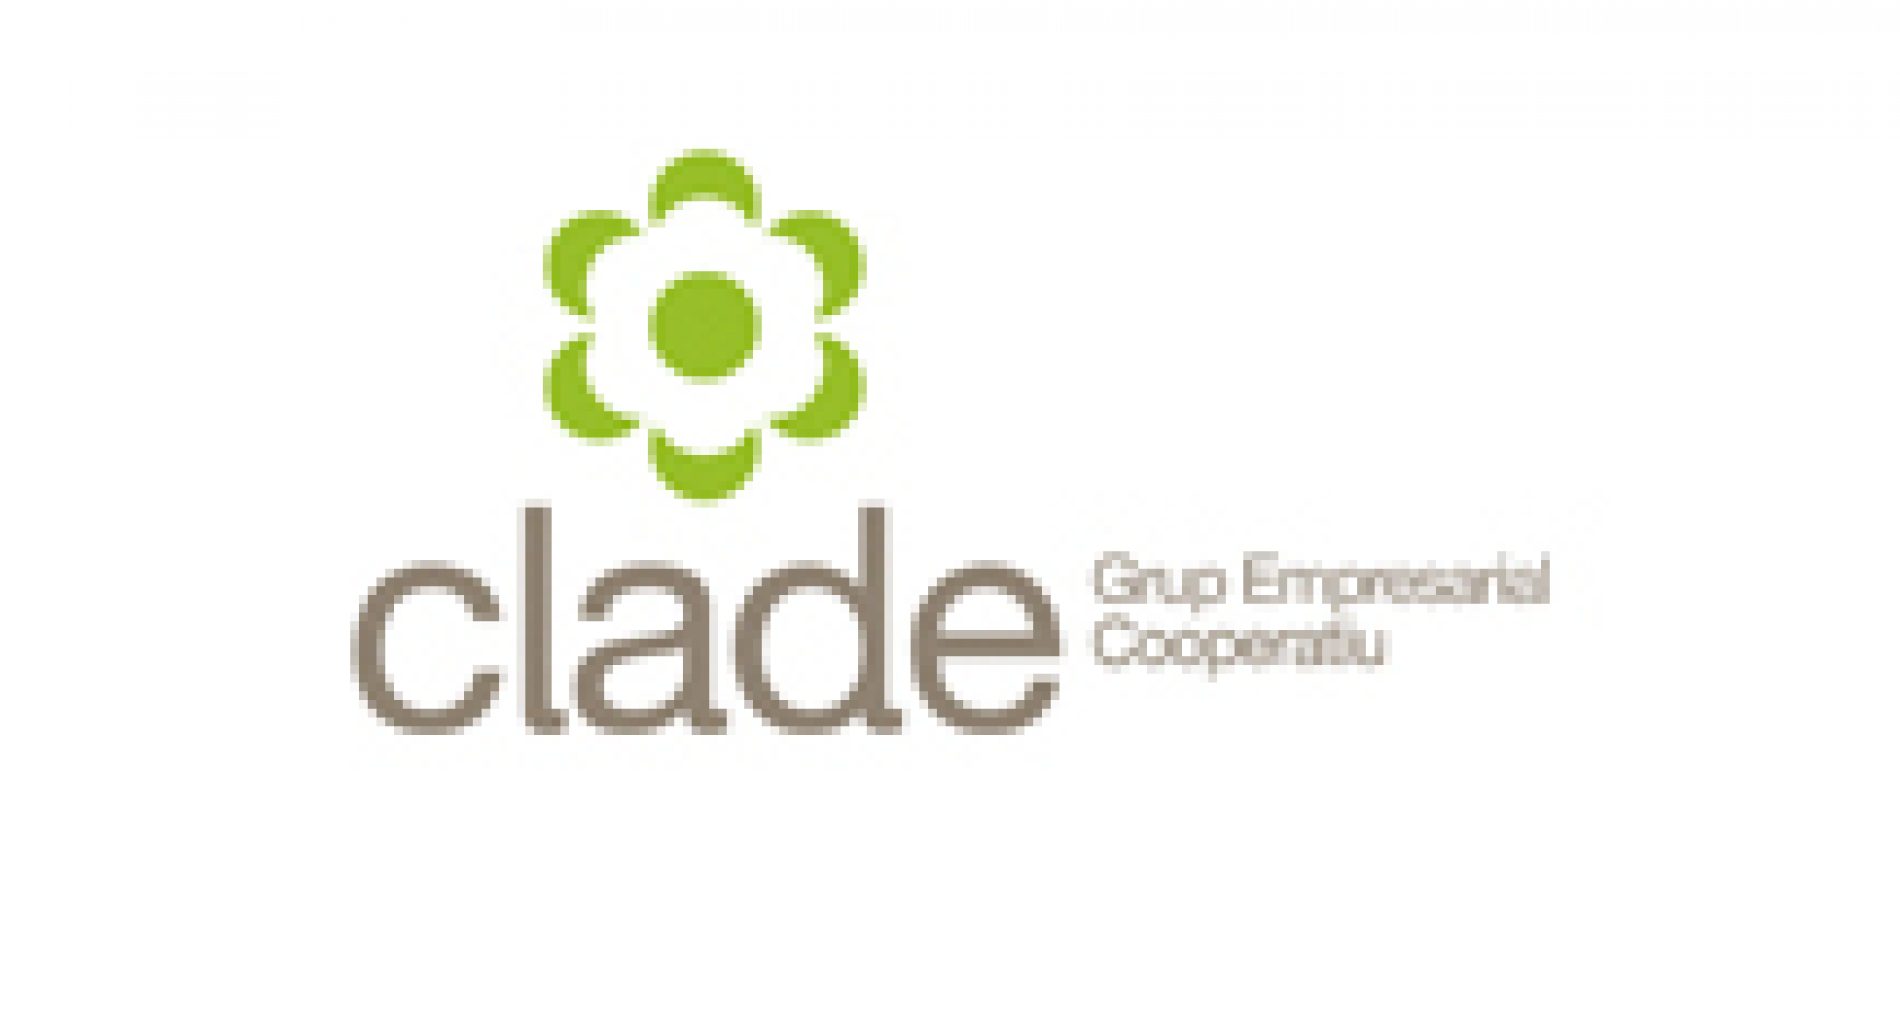 Les empreses del Grup Clade volen anar un pas més enllà en RSE